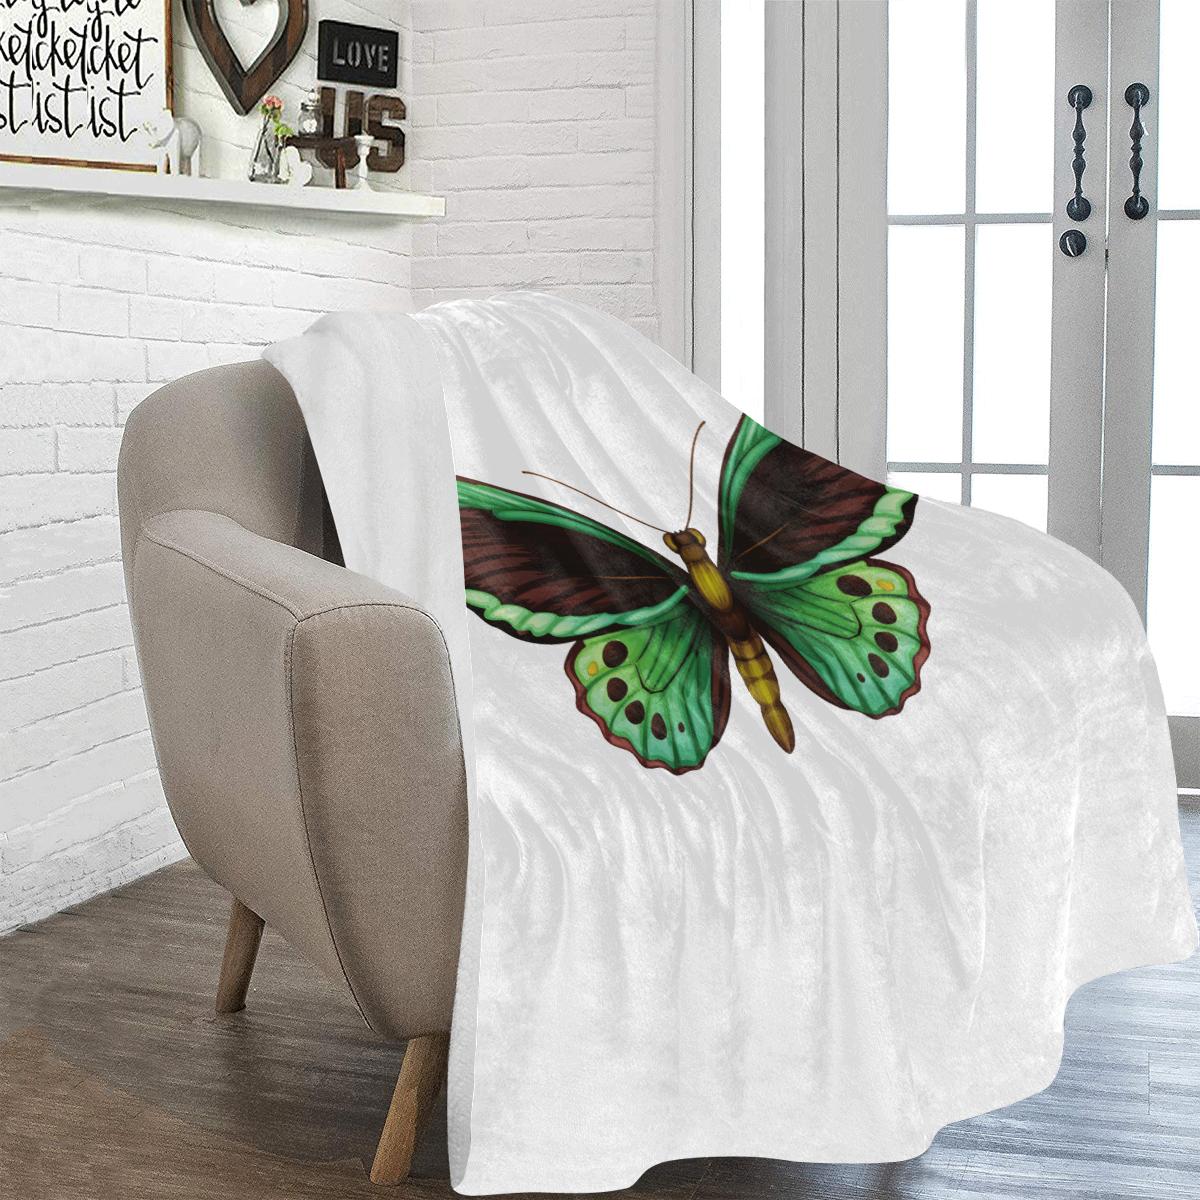 Green Butterfly Ultra-Soft Micro Fleece Blanket 54''x70''